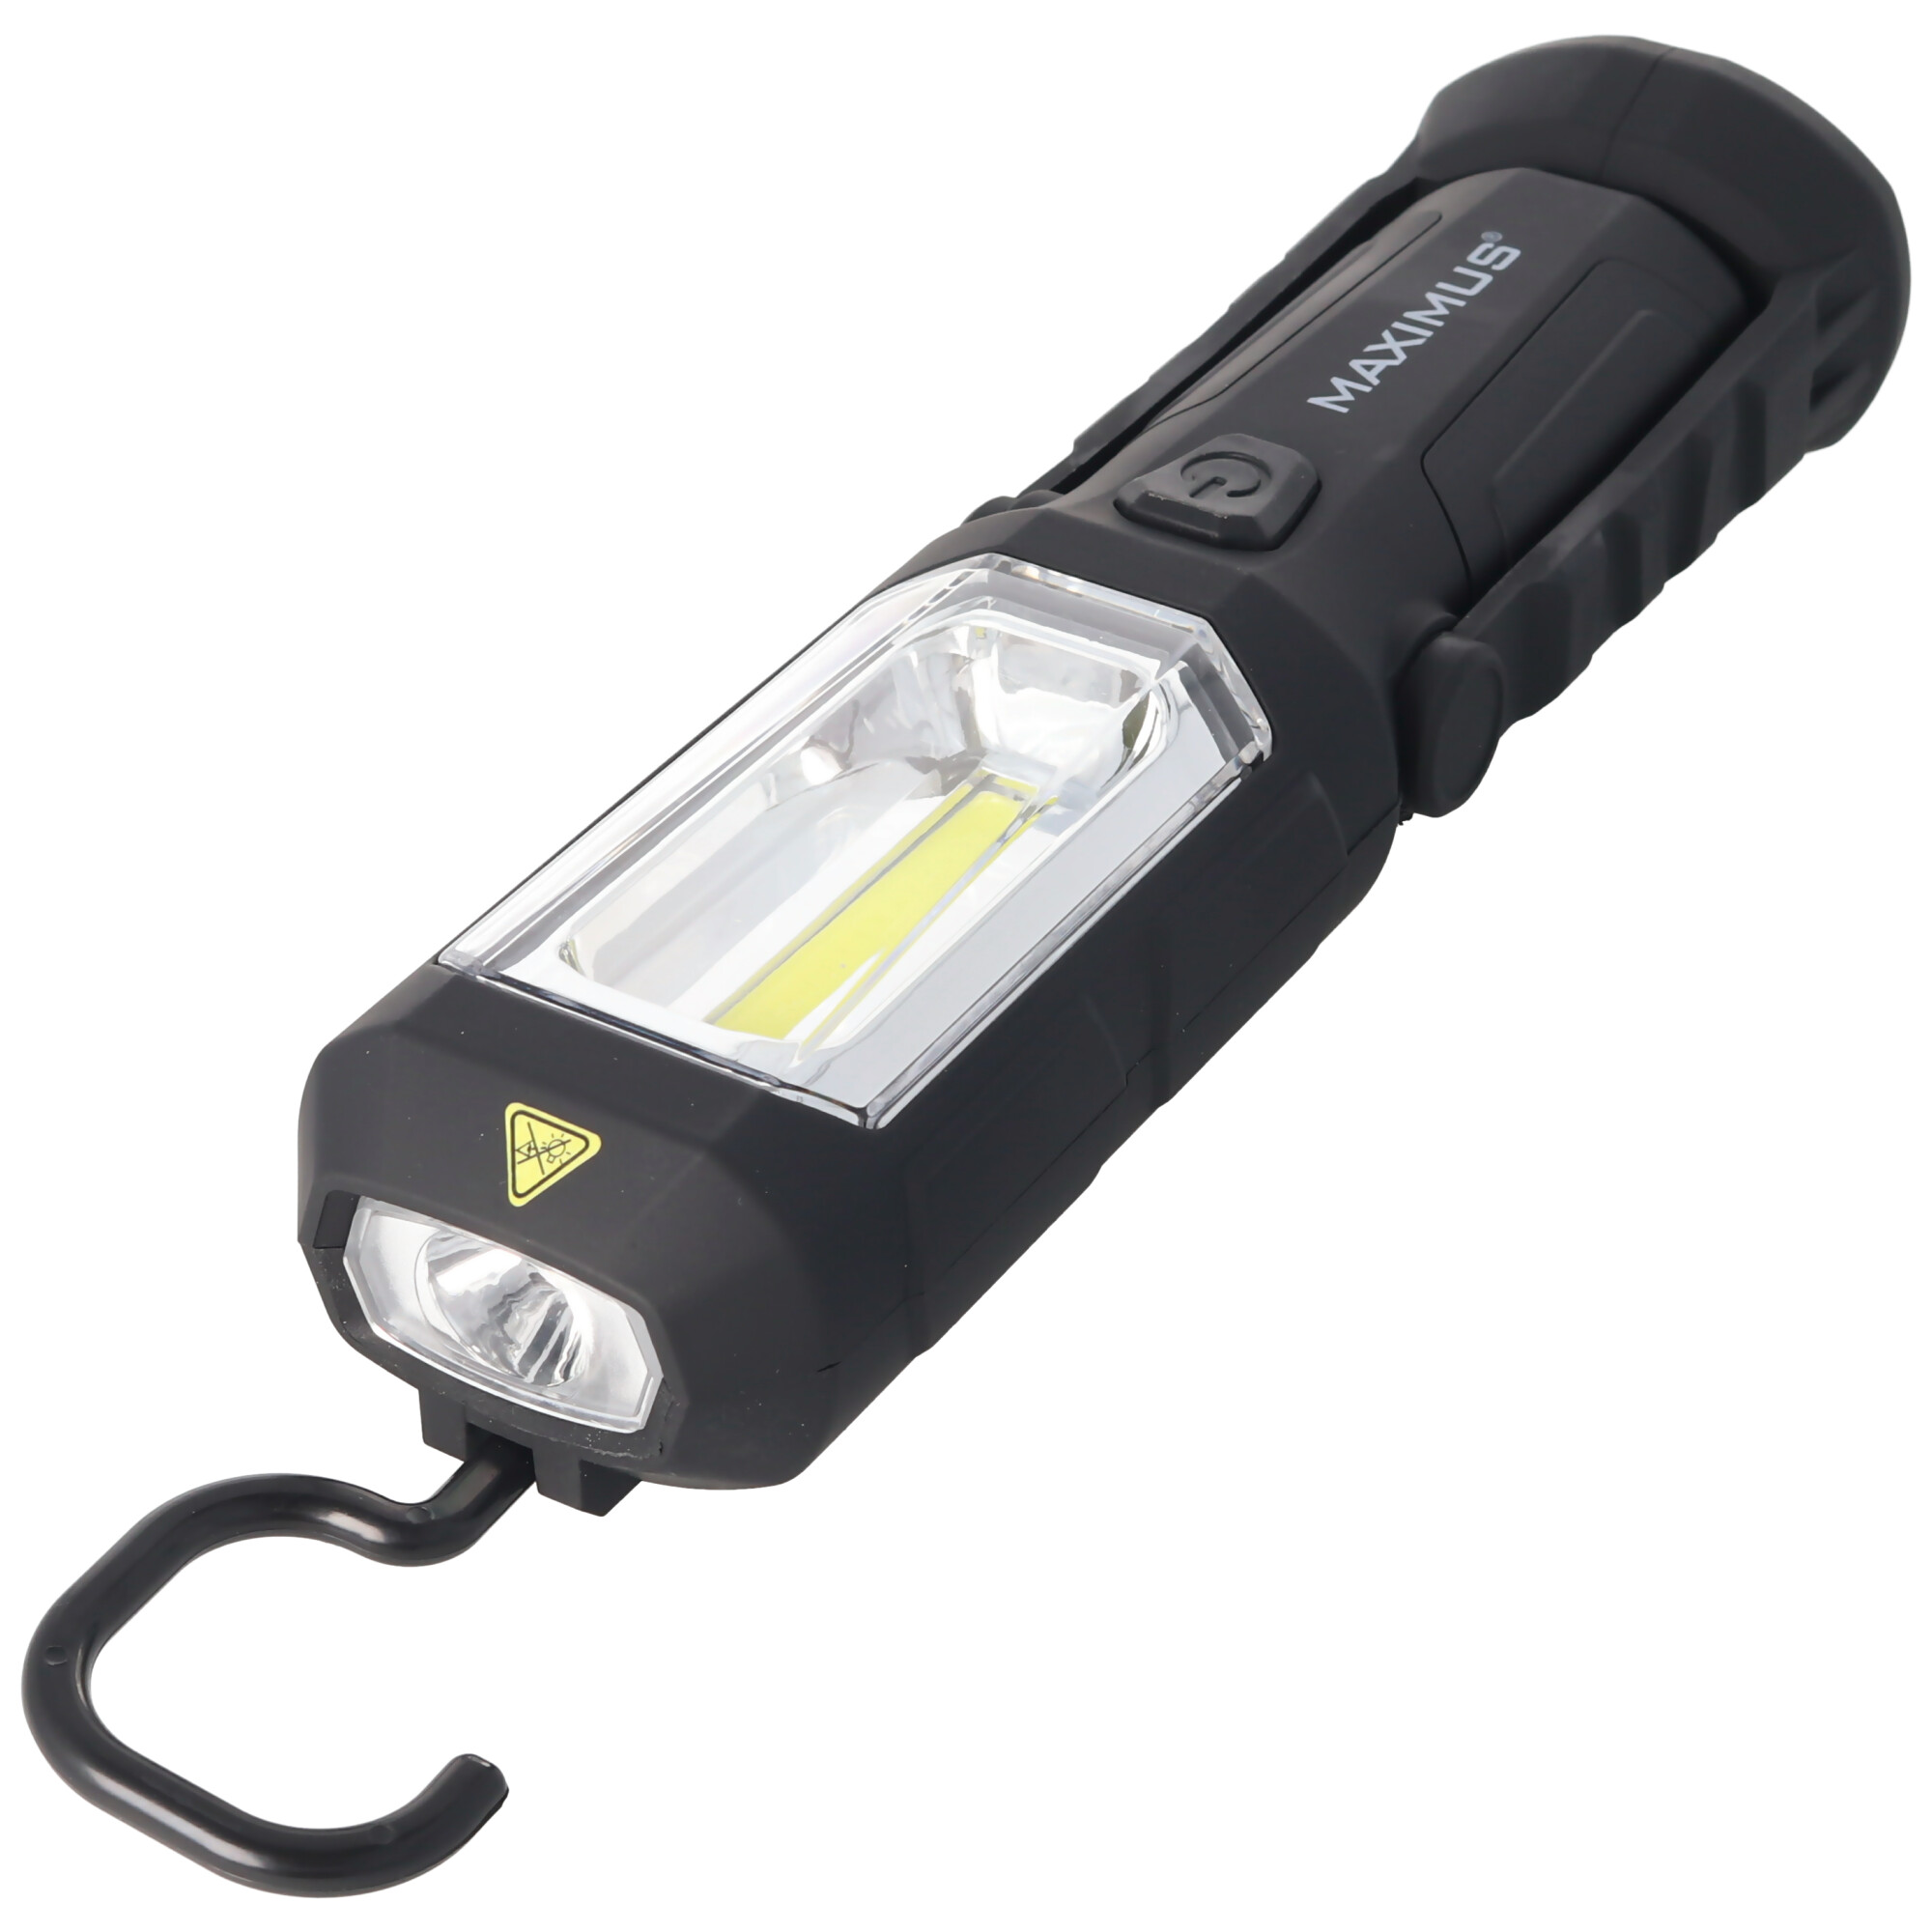 3W LED Arbeitsleuchte inklusive 3 Marken Alkaline Batterien mit Magnet,  max. 250 Lumen | Arbeitsleuchten | LEDs,Taschenlampen, Lichttechnik |  Akkushop